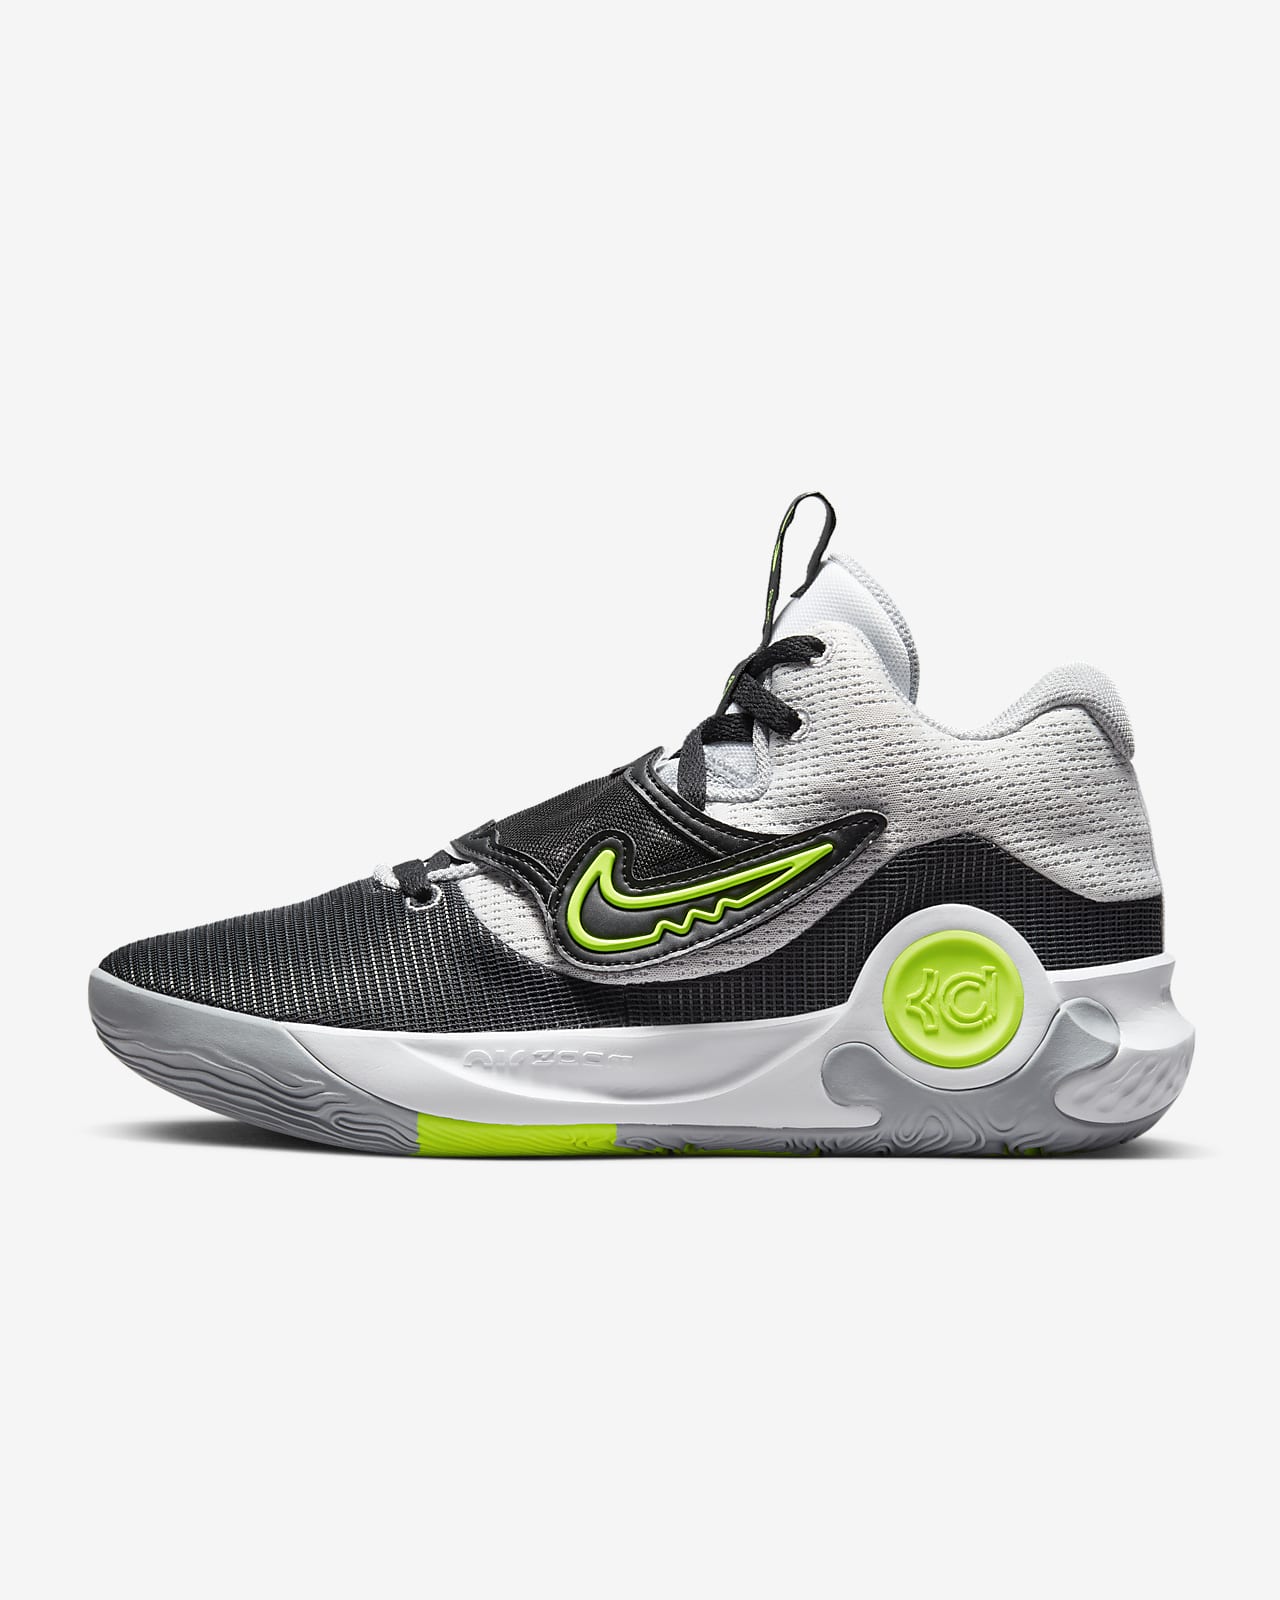 Calzado básquetbol KD Trey 5 Nike.com